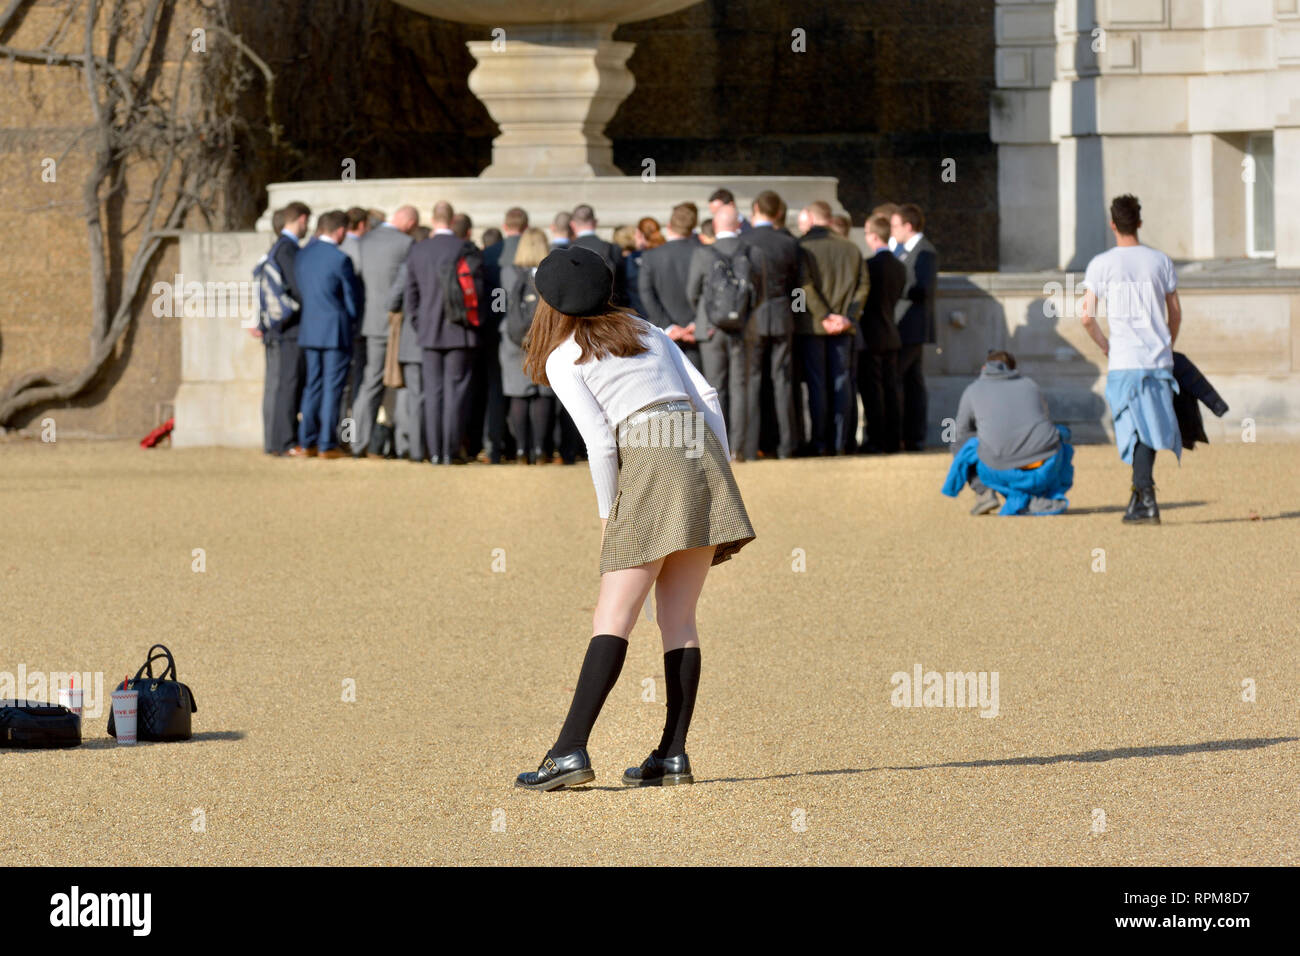 Londra, Inghilterra, Regno Unito. Giovane donna che posa per una foto alla Horse Guards Parade in una calda giornata di sole a febbraio 2019. Gruppo di uomini sullo sfondo Foto Stock